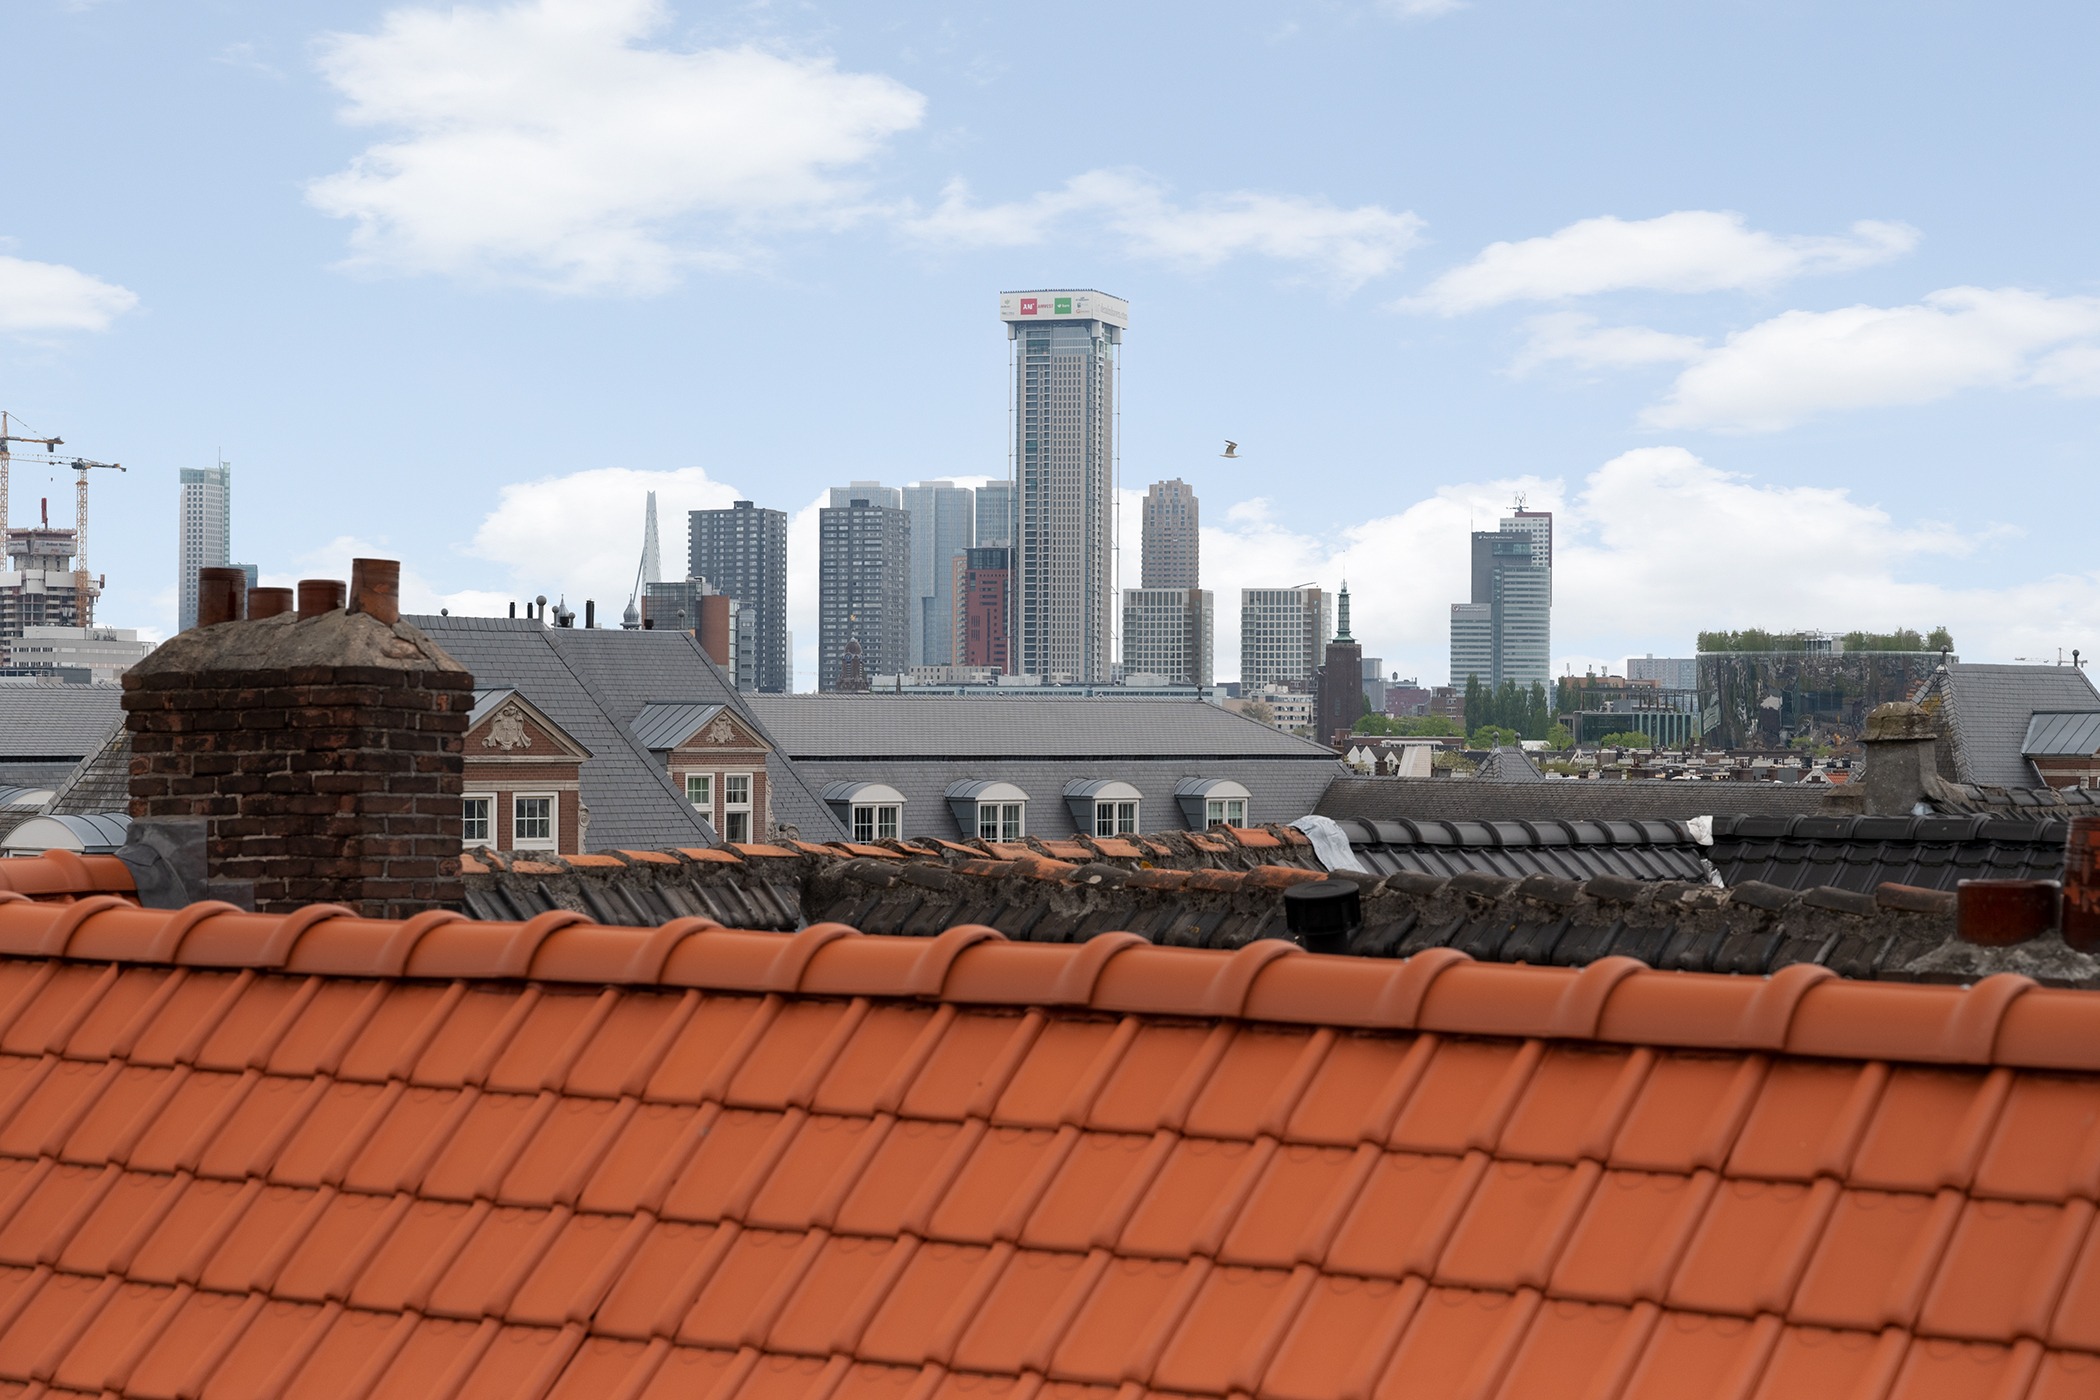 Woning / appartement - Rotterdam - Henegouwerplein 2 B